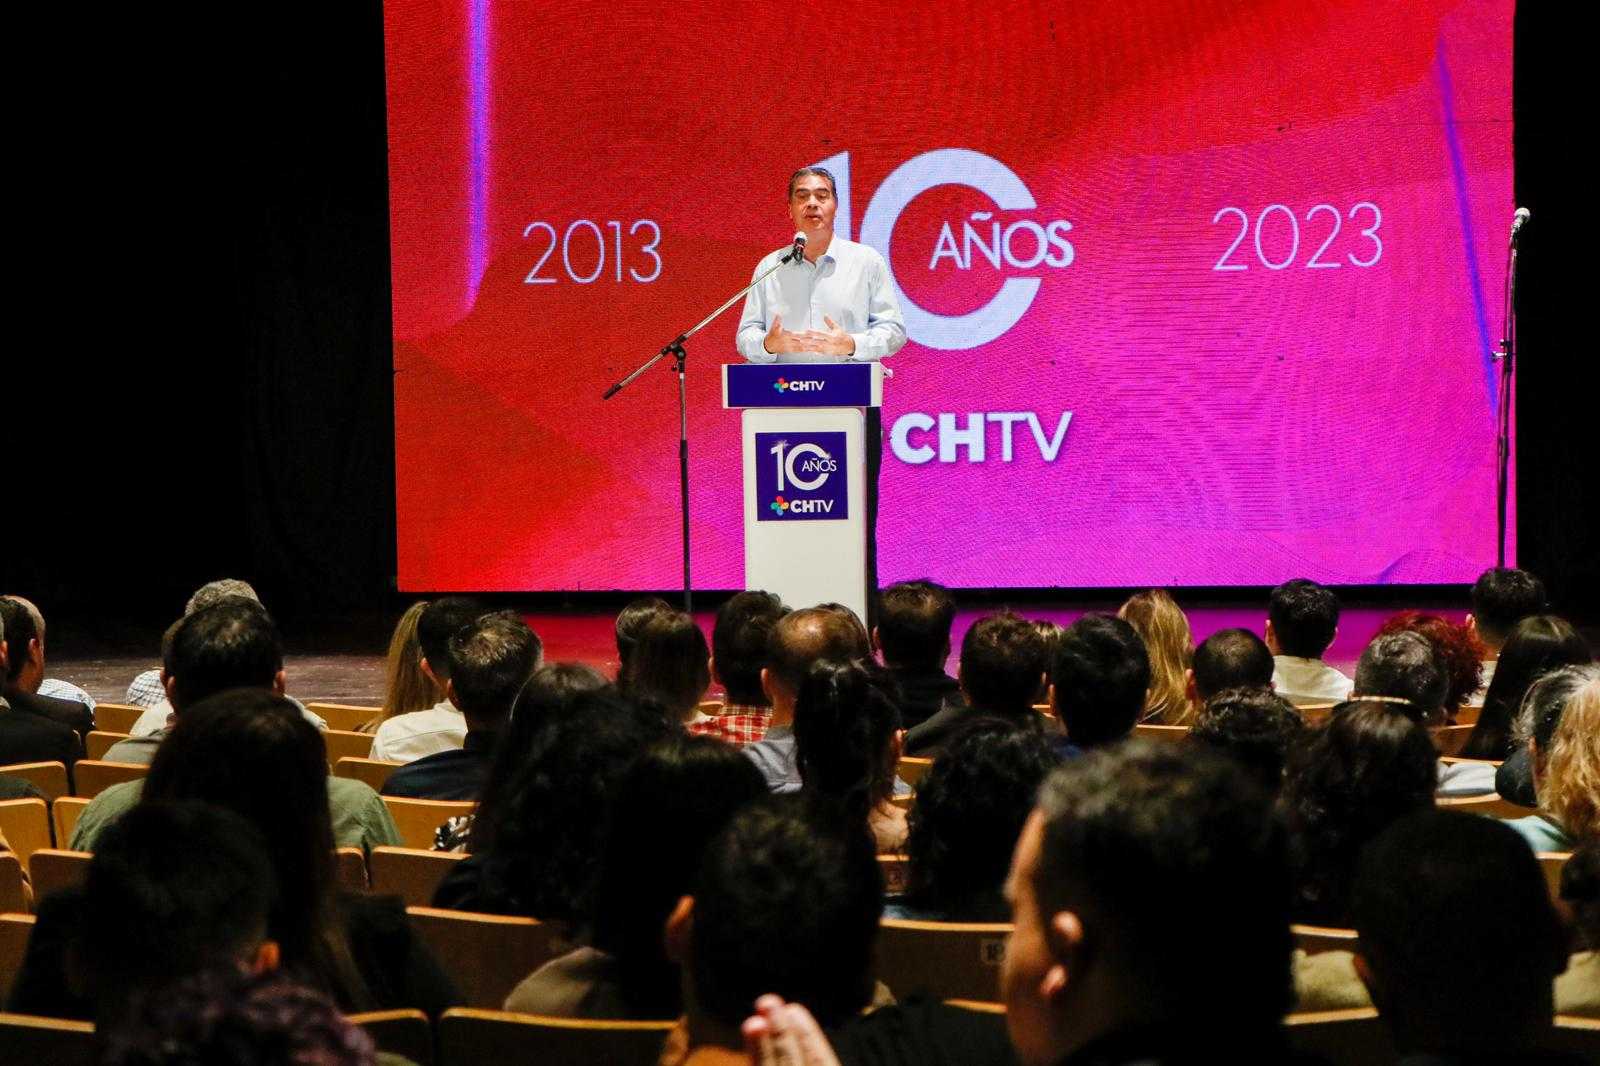 Identidad Chaqueña – Chaco TV cumplío 10 años: “El objetivo de los medios públicos es garantizar pluralidad de voces”